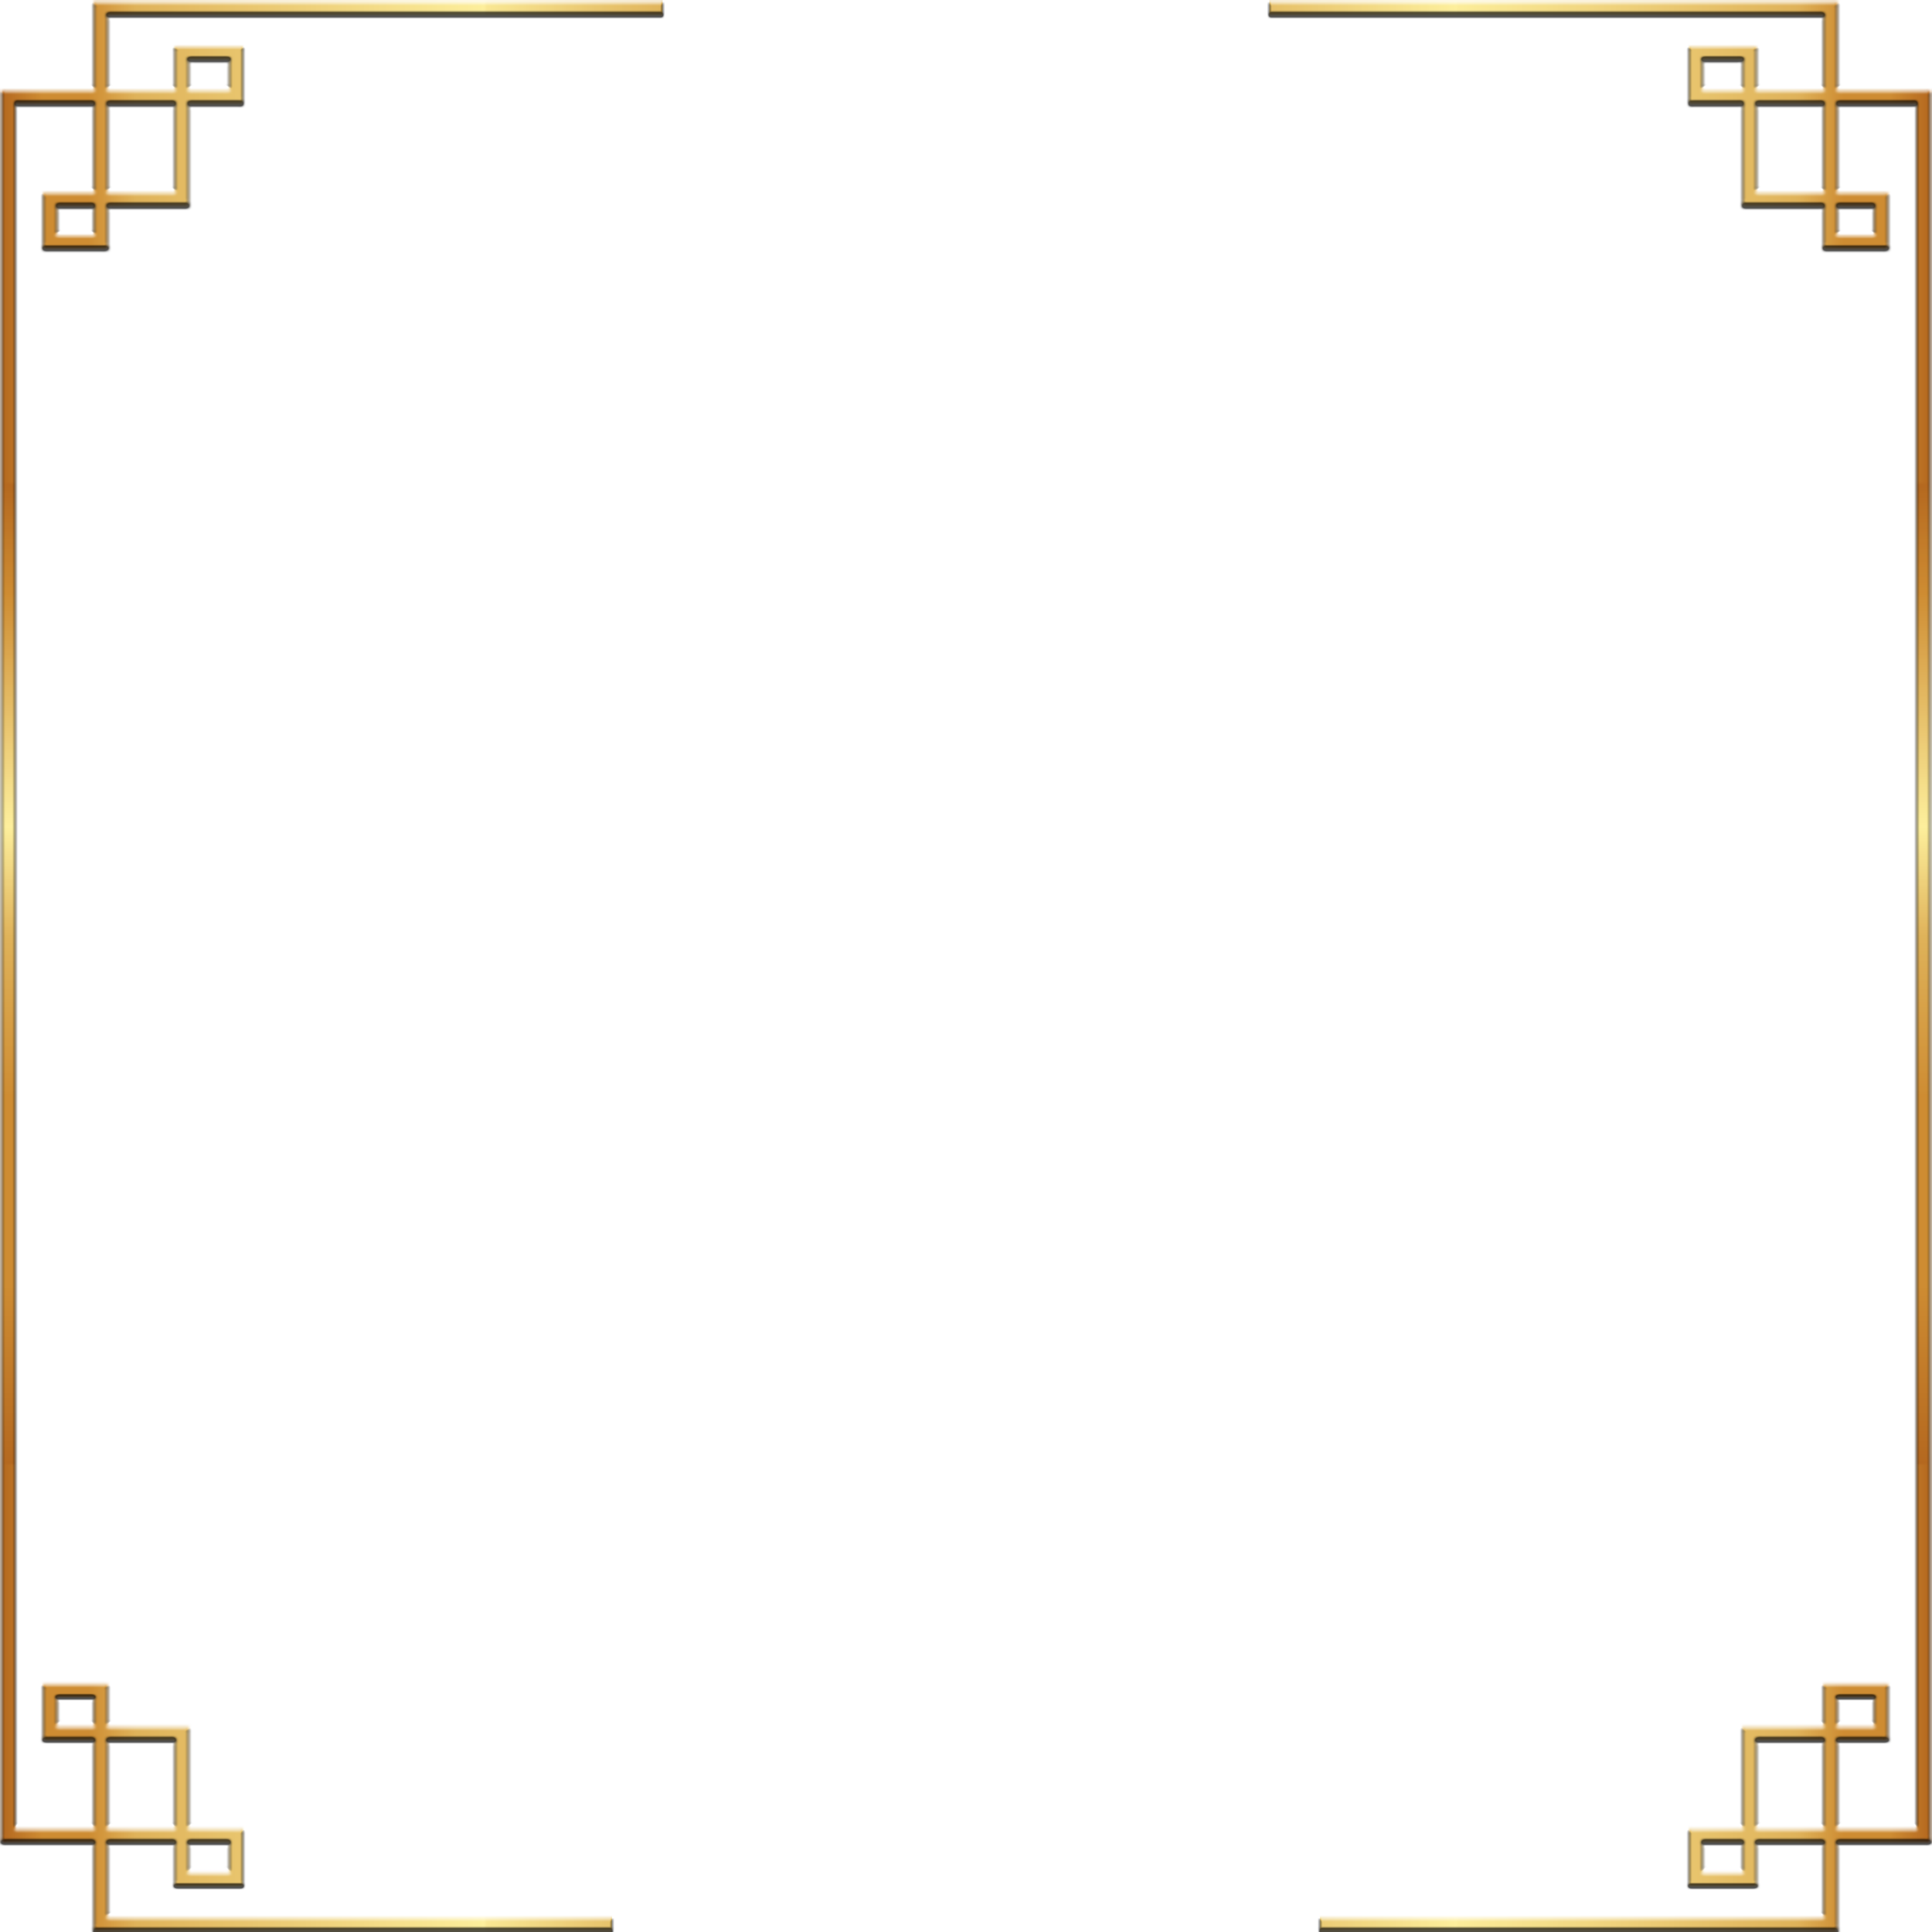 POCOCHA.png